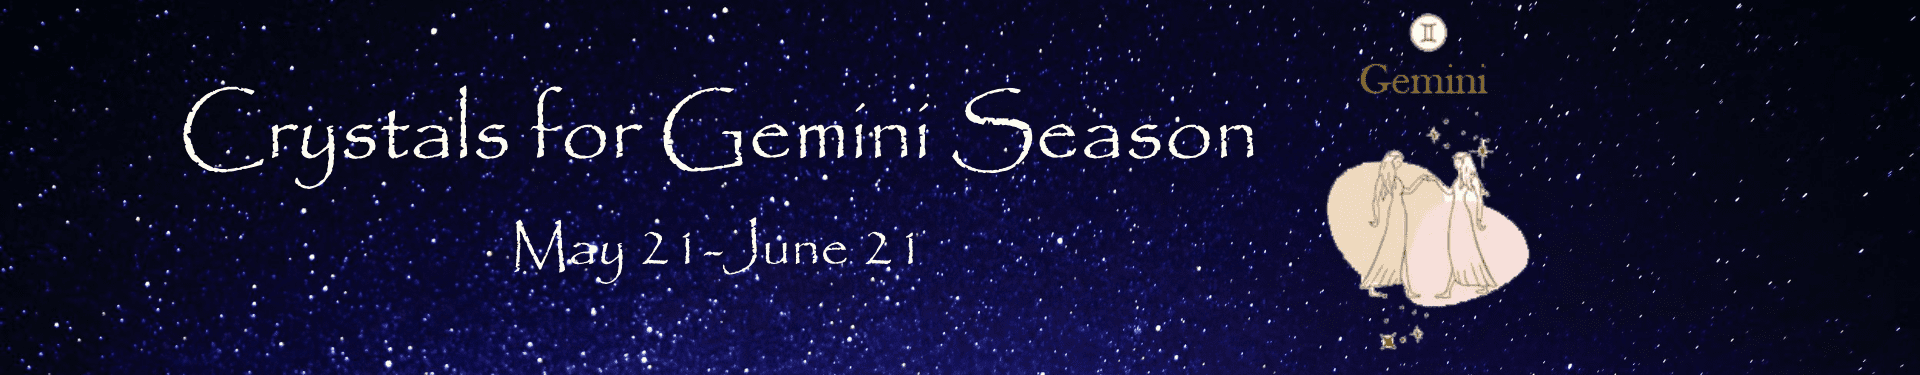 Gemini Season Banner